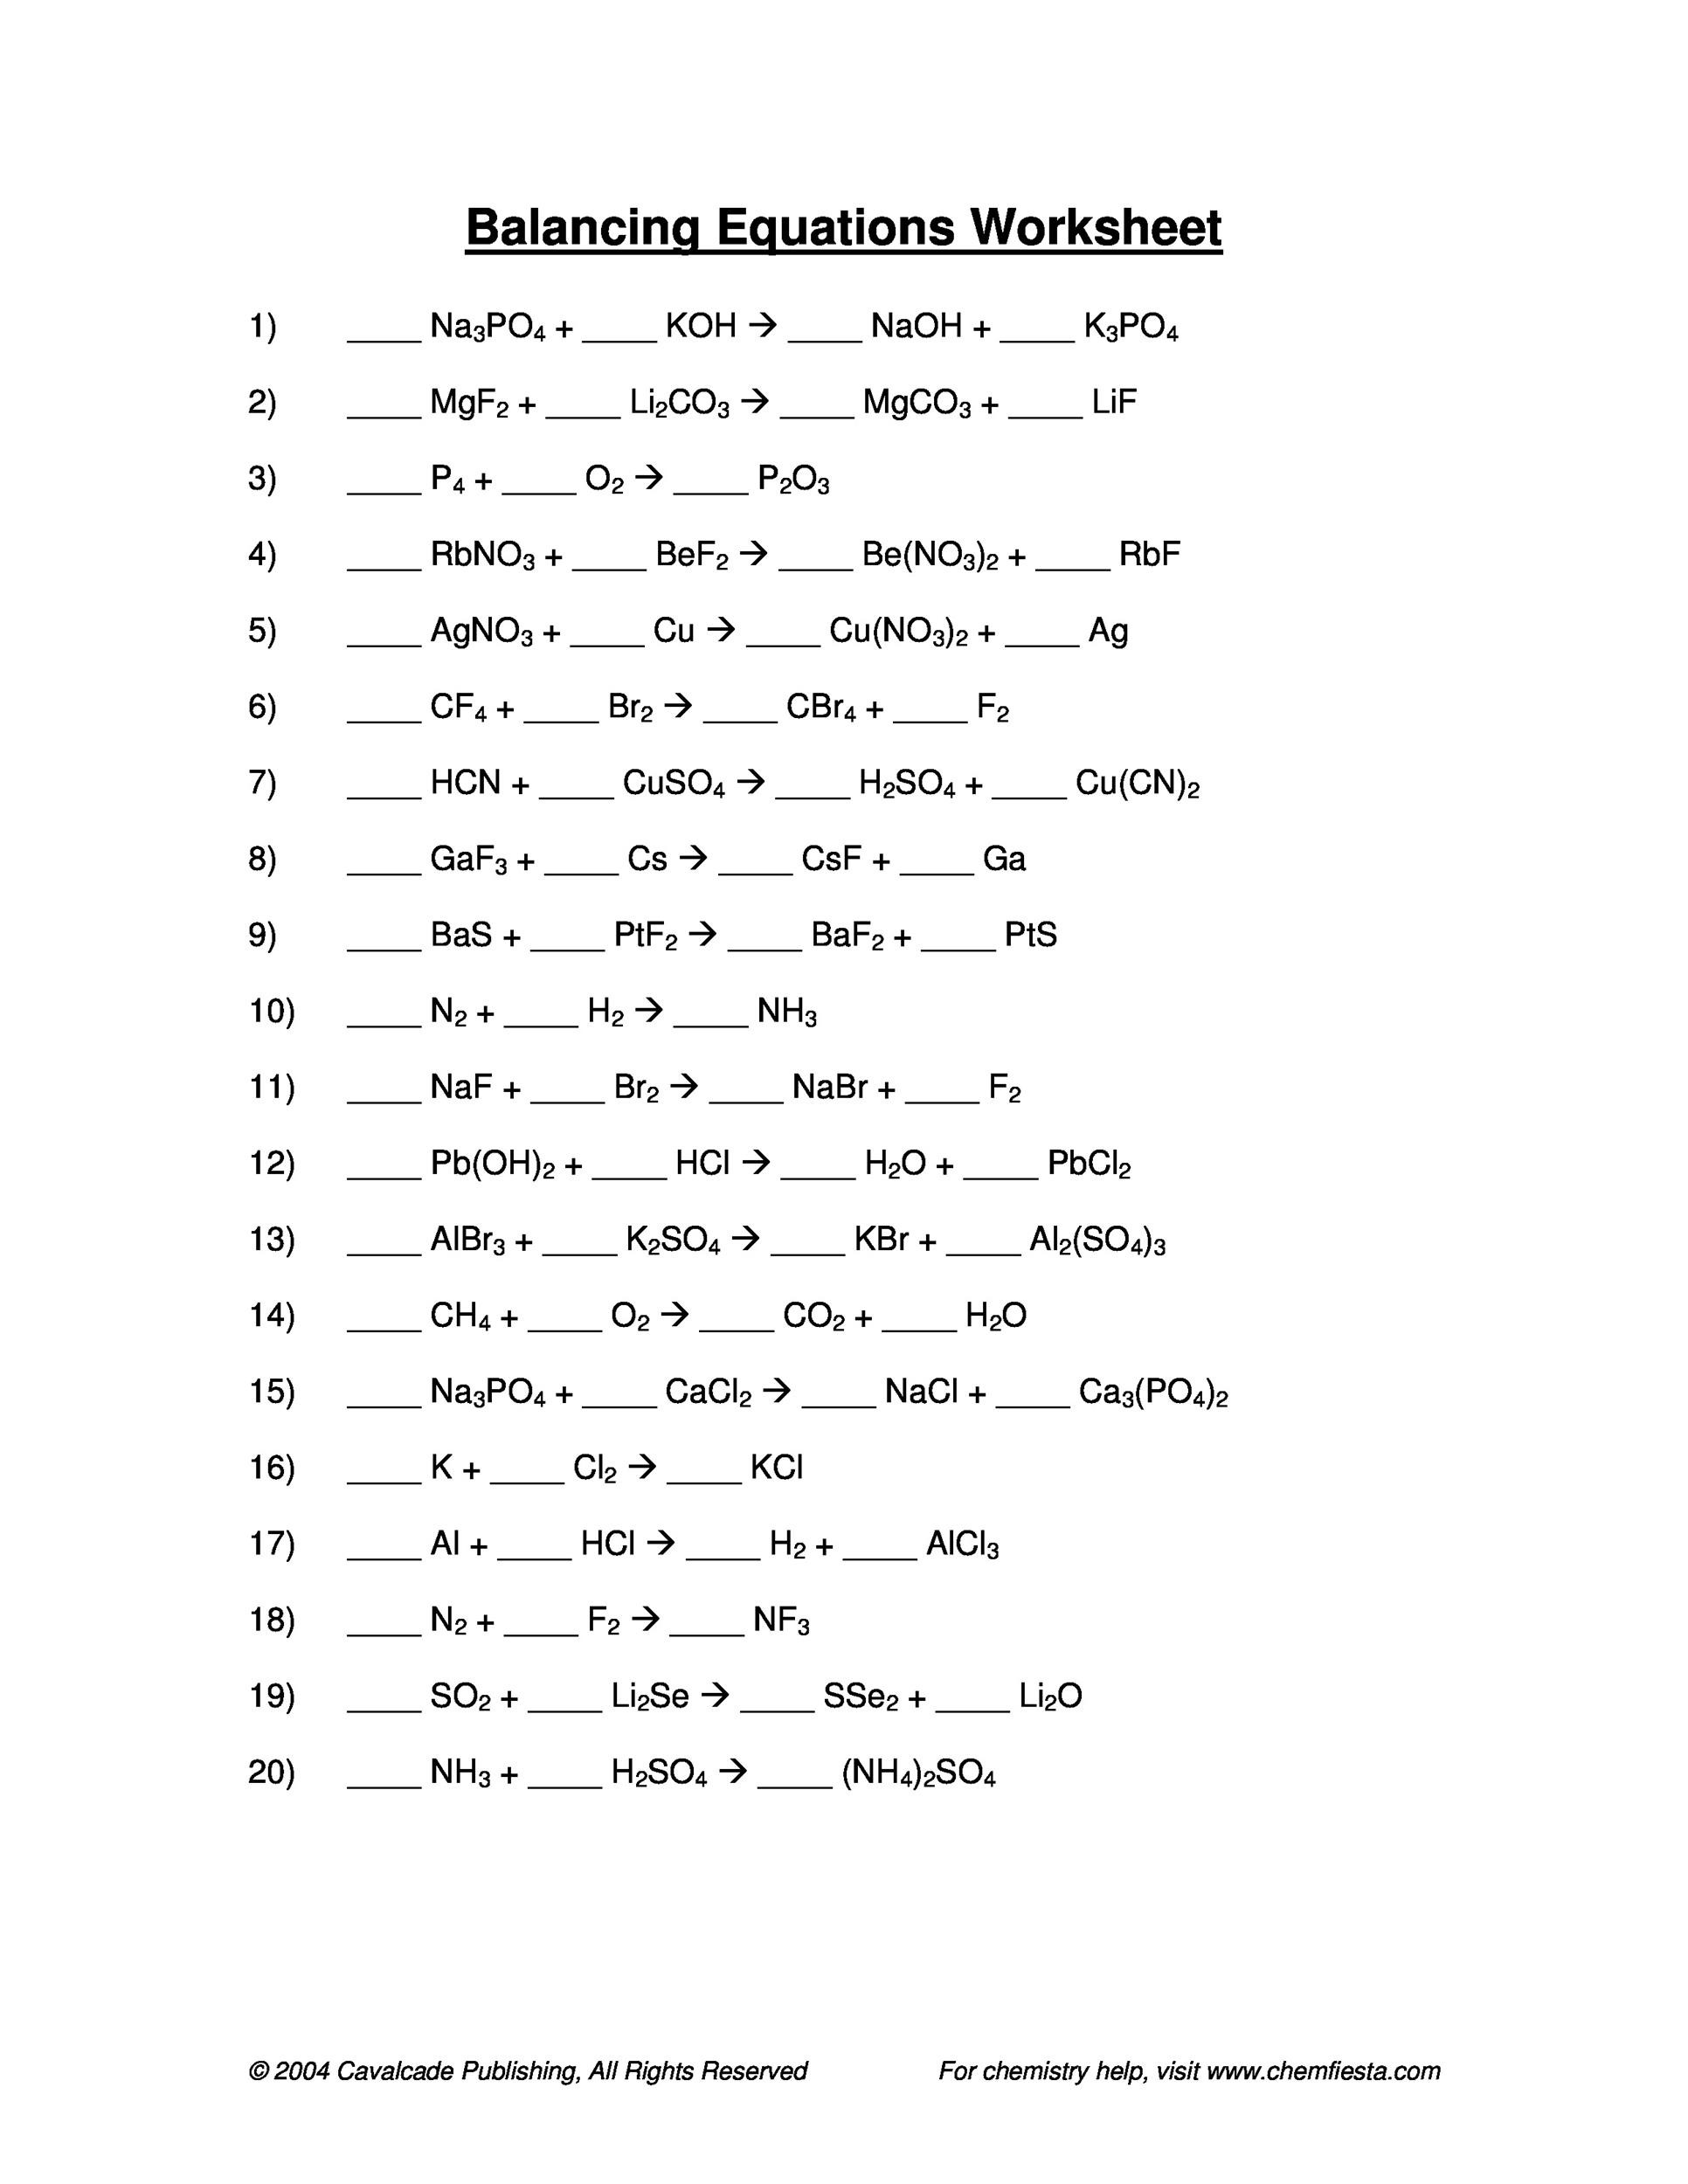 Balancing Equations Worksheet Answer Key 49 Balancing Chemical Equations Worksheets [with Answers]